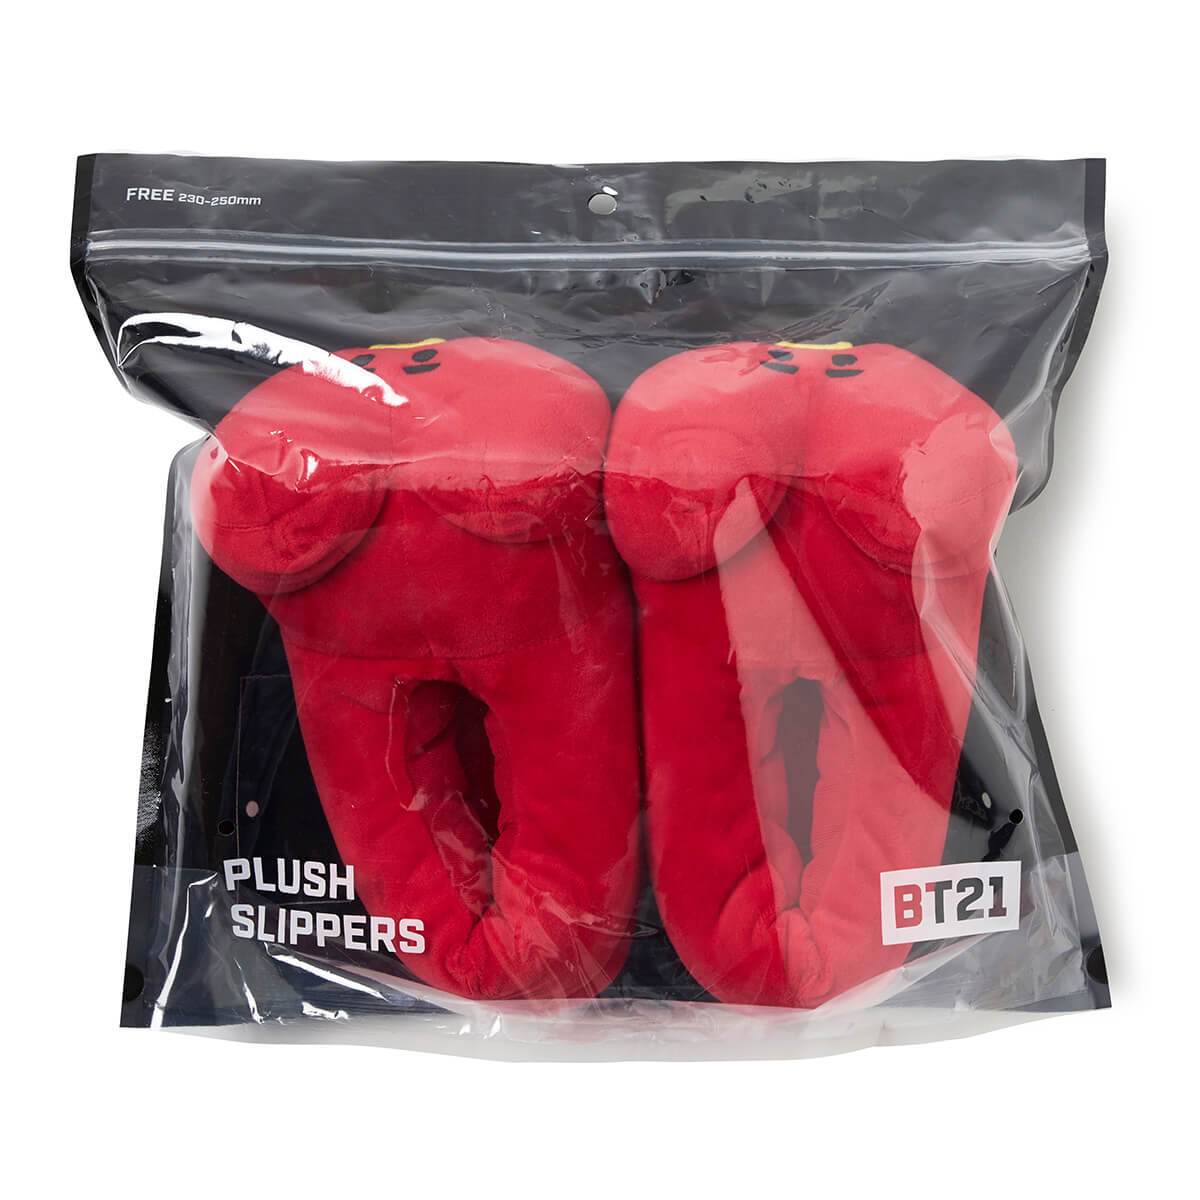 BT21 TATA Plush Indoor Slippers